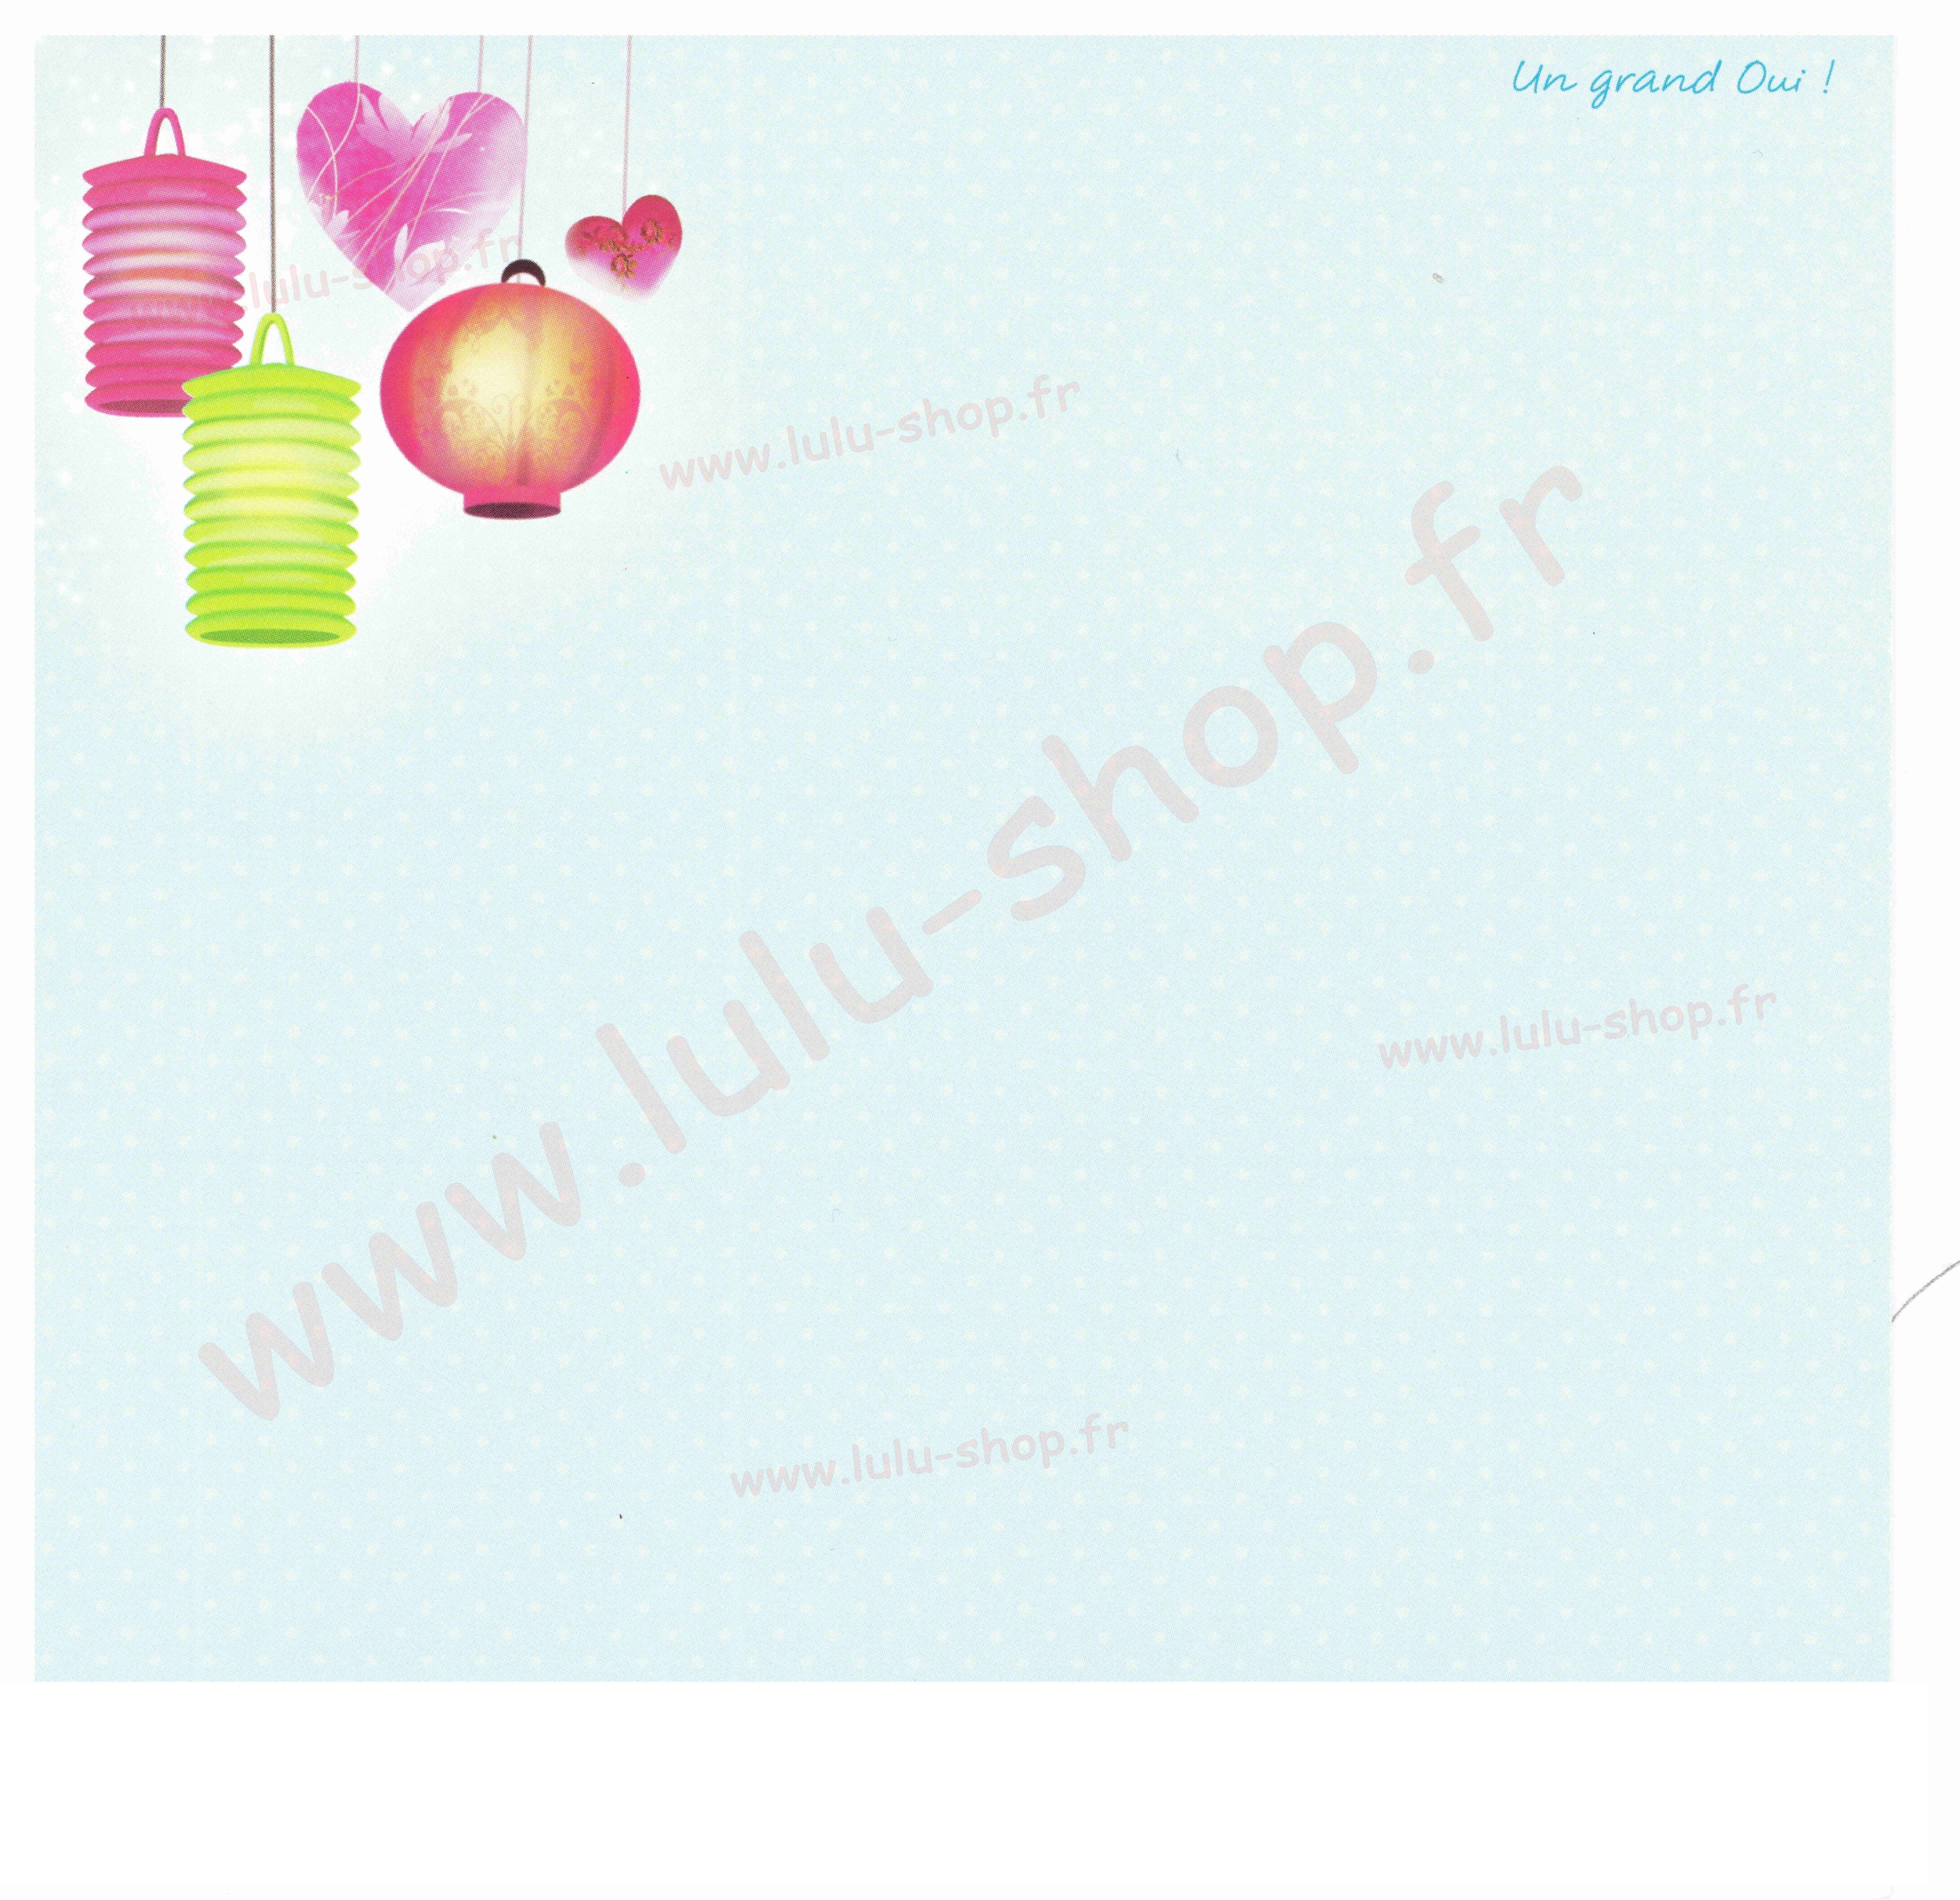 www.lulu-shop.fr Un grand Oui !